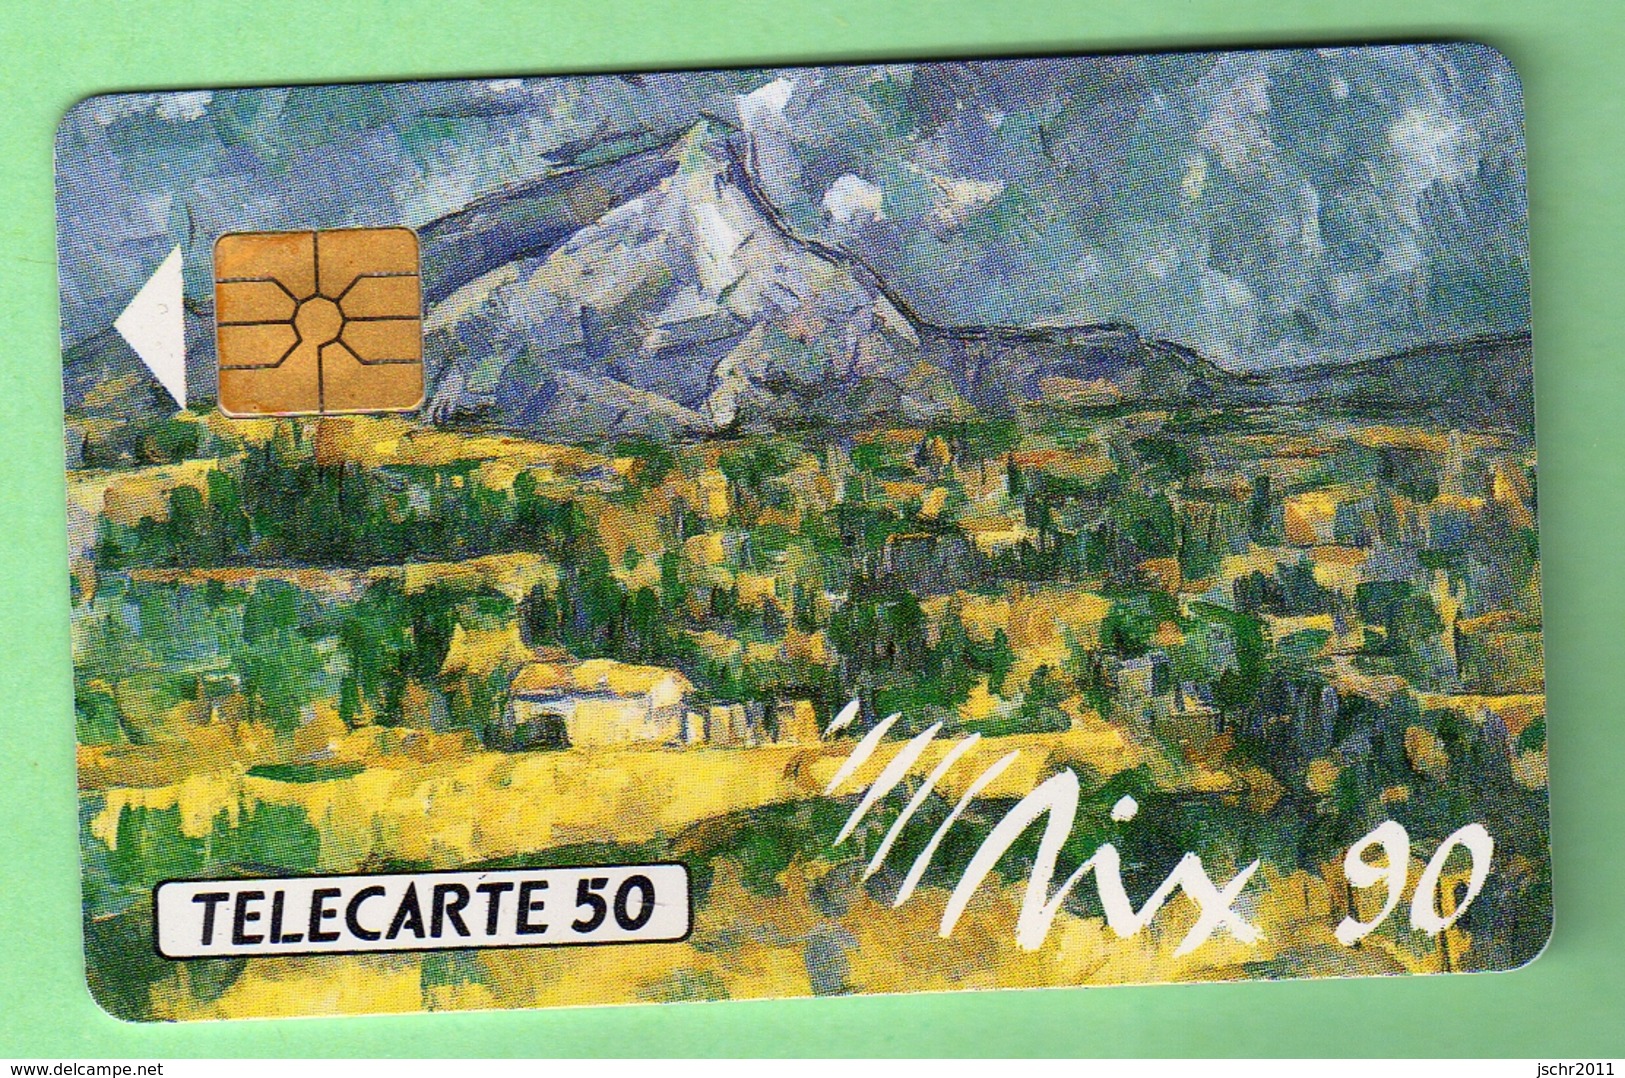 D420 *** AIX 90 - Tableau De Cezanne *** A501-P2 - Privées